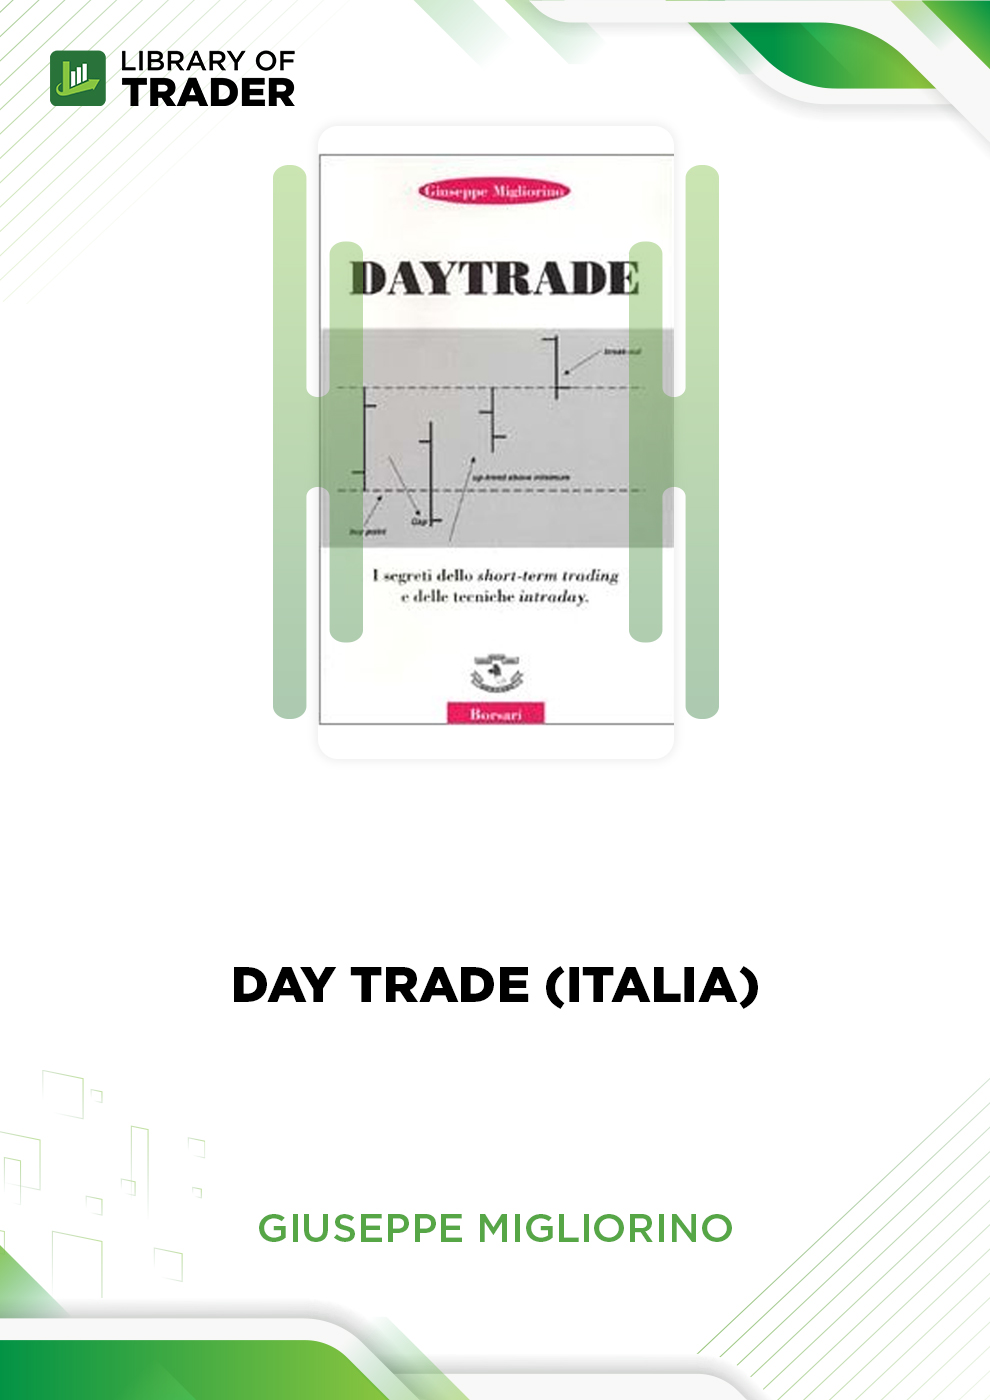 Day Trade (Italia) by Giuseppe Migliorino